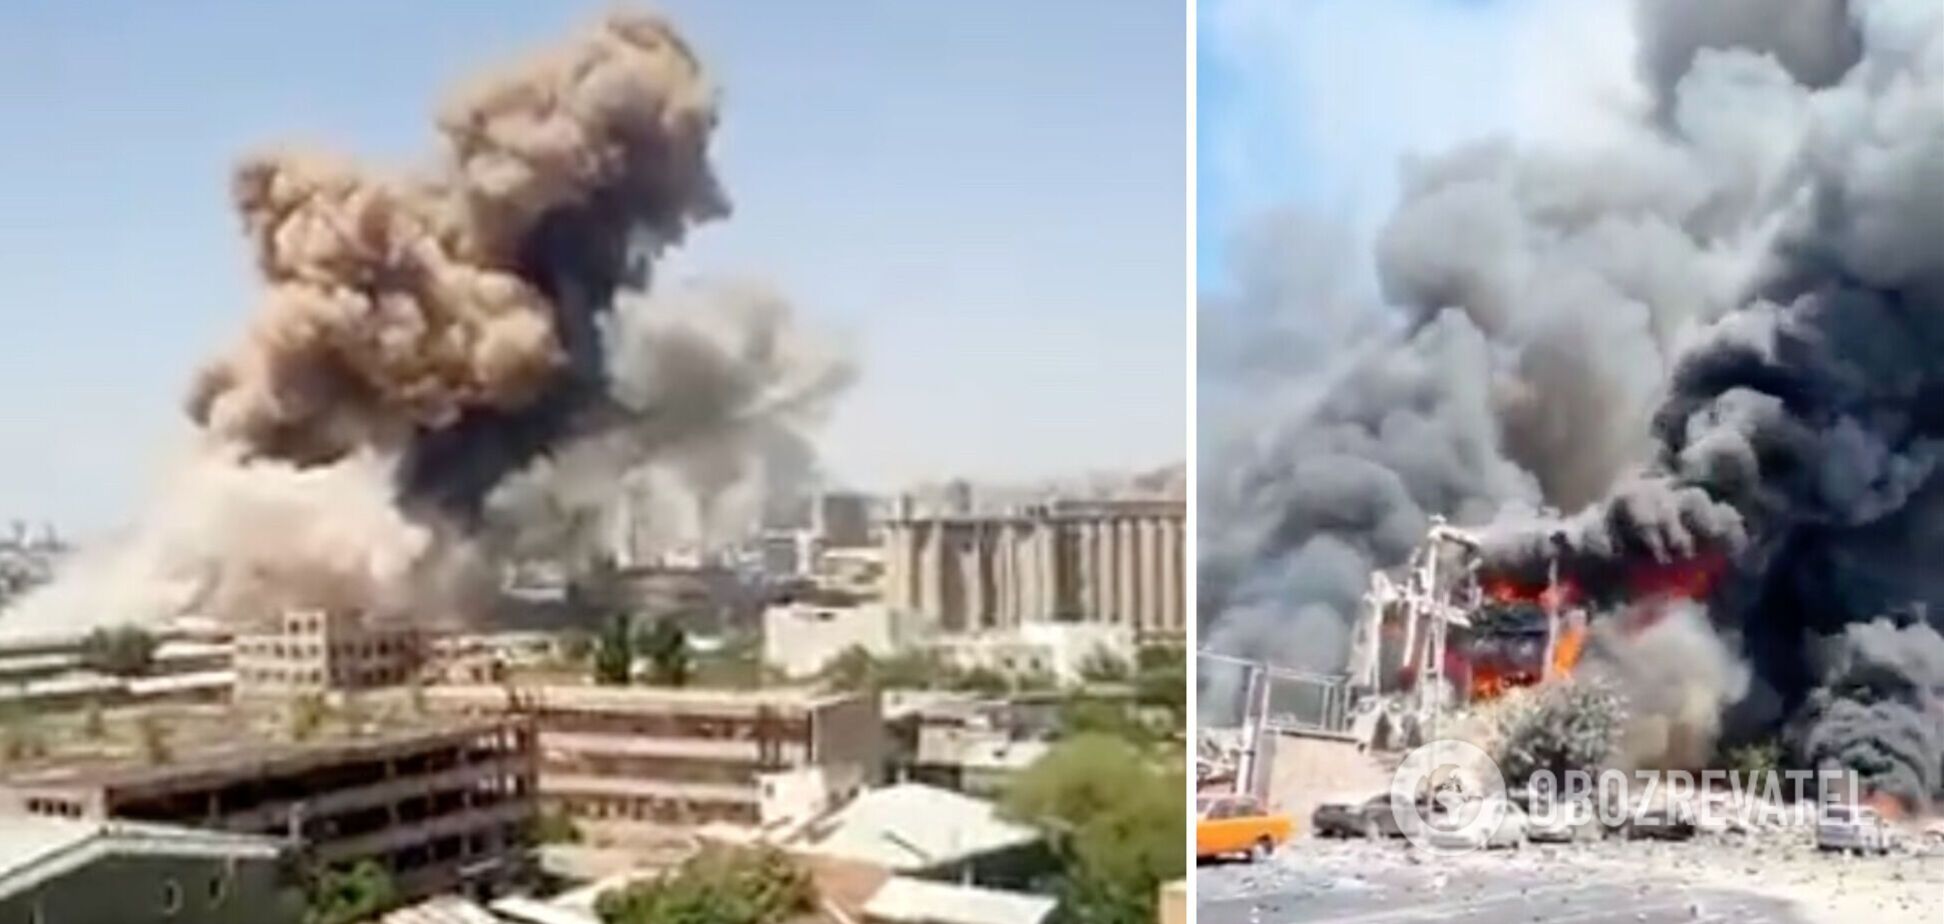  В Ереване прогремел мощнейший взрыв в ТЦ: видео и все детали  